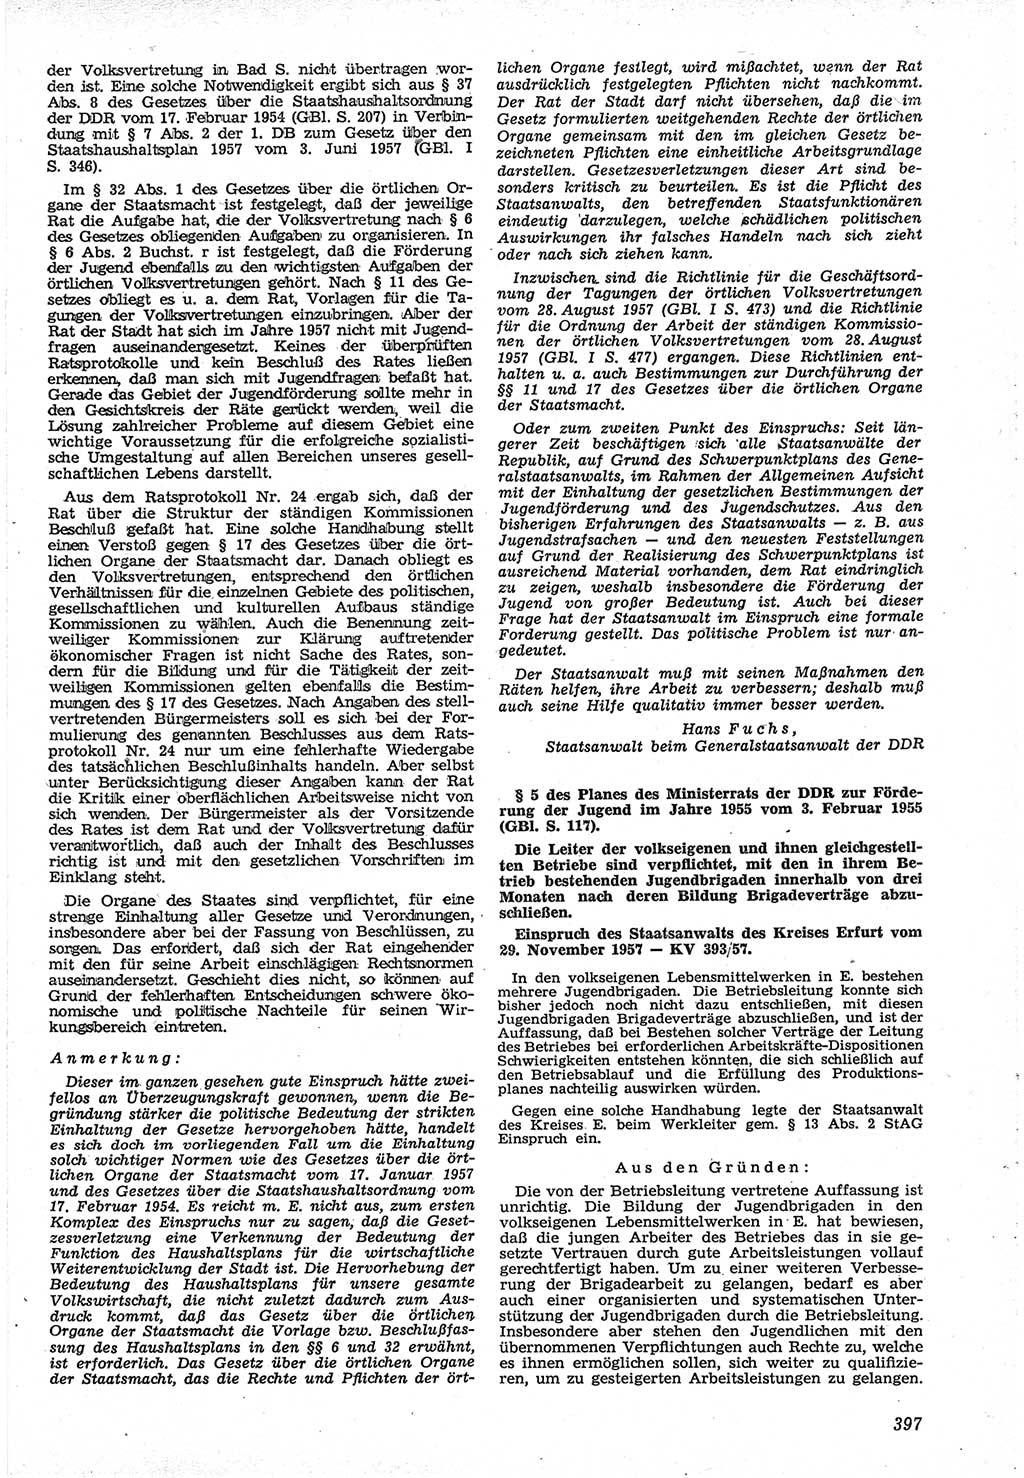 Neue Justiz (NJ), Zeitschrift für Recht und Rechtswissenschaft [Deutsche Demokratische Republik (DDR)], 12. Jahrgang 1958, Seite 397 (NJ DDR 1958, S. 397)